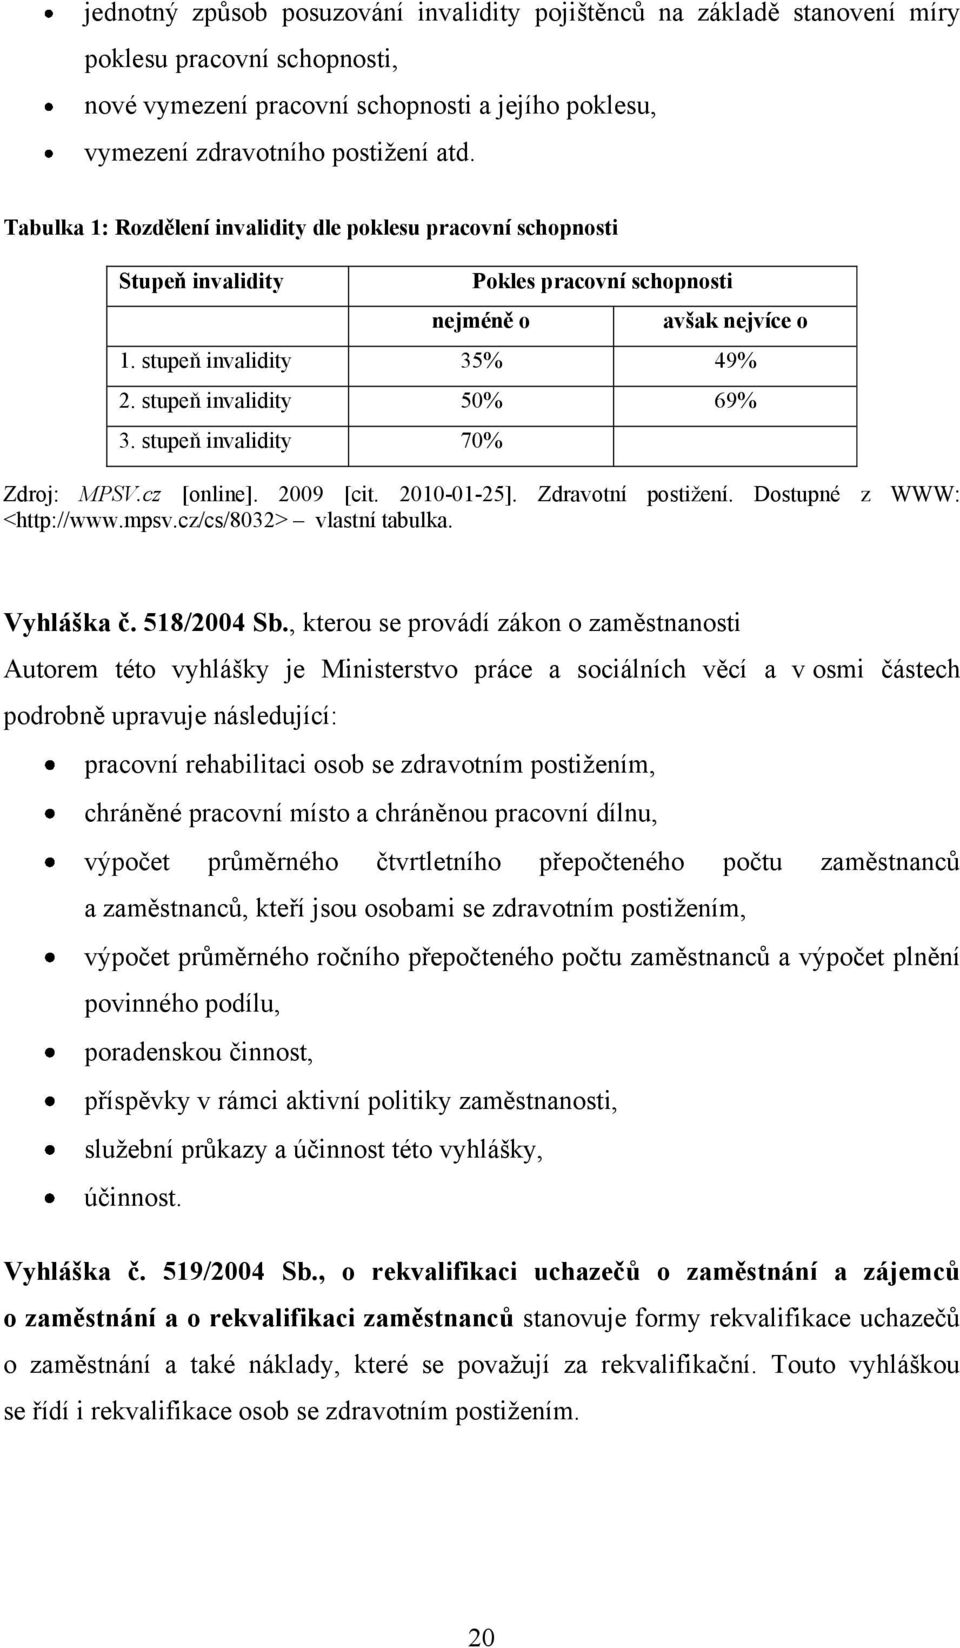 stupeň invalidity 70% Zdroj: MPSV.cz [online]. 2009 [cit. 2010-01-25]. Zdravotní postiţení. Dostupné z WWW: <http://www.mpsv.cz/cs/8032> vlastní tabulka. Vyhláška č. 518/2004 Sb.